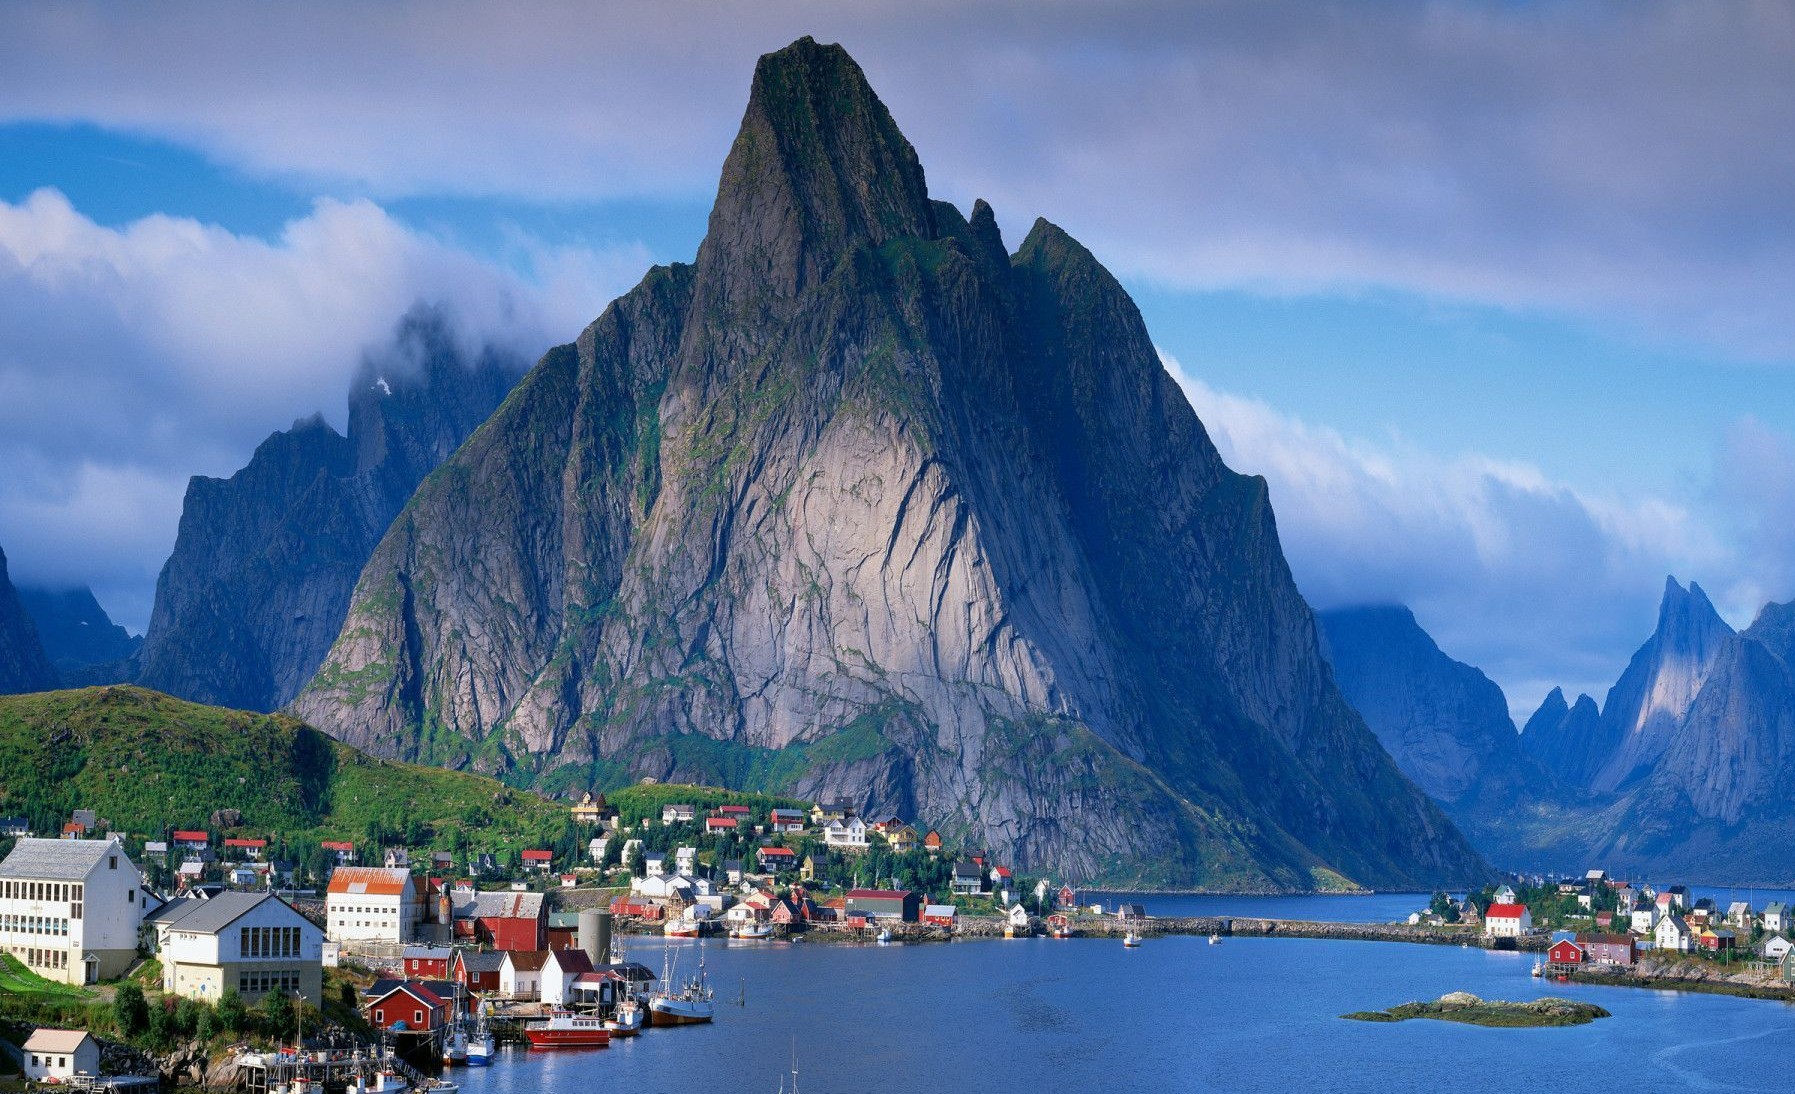 Grabar haz caligrafía Fiordos noruegos, un crucero de impresión | CONSEJEROS VIAJEROS